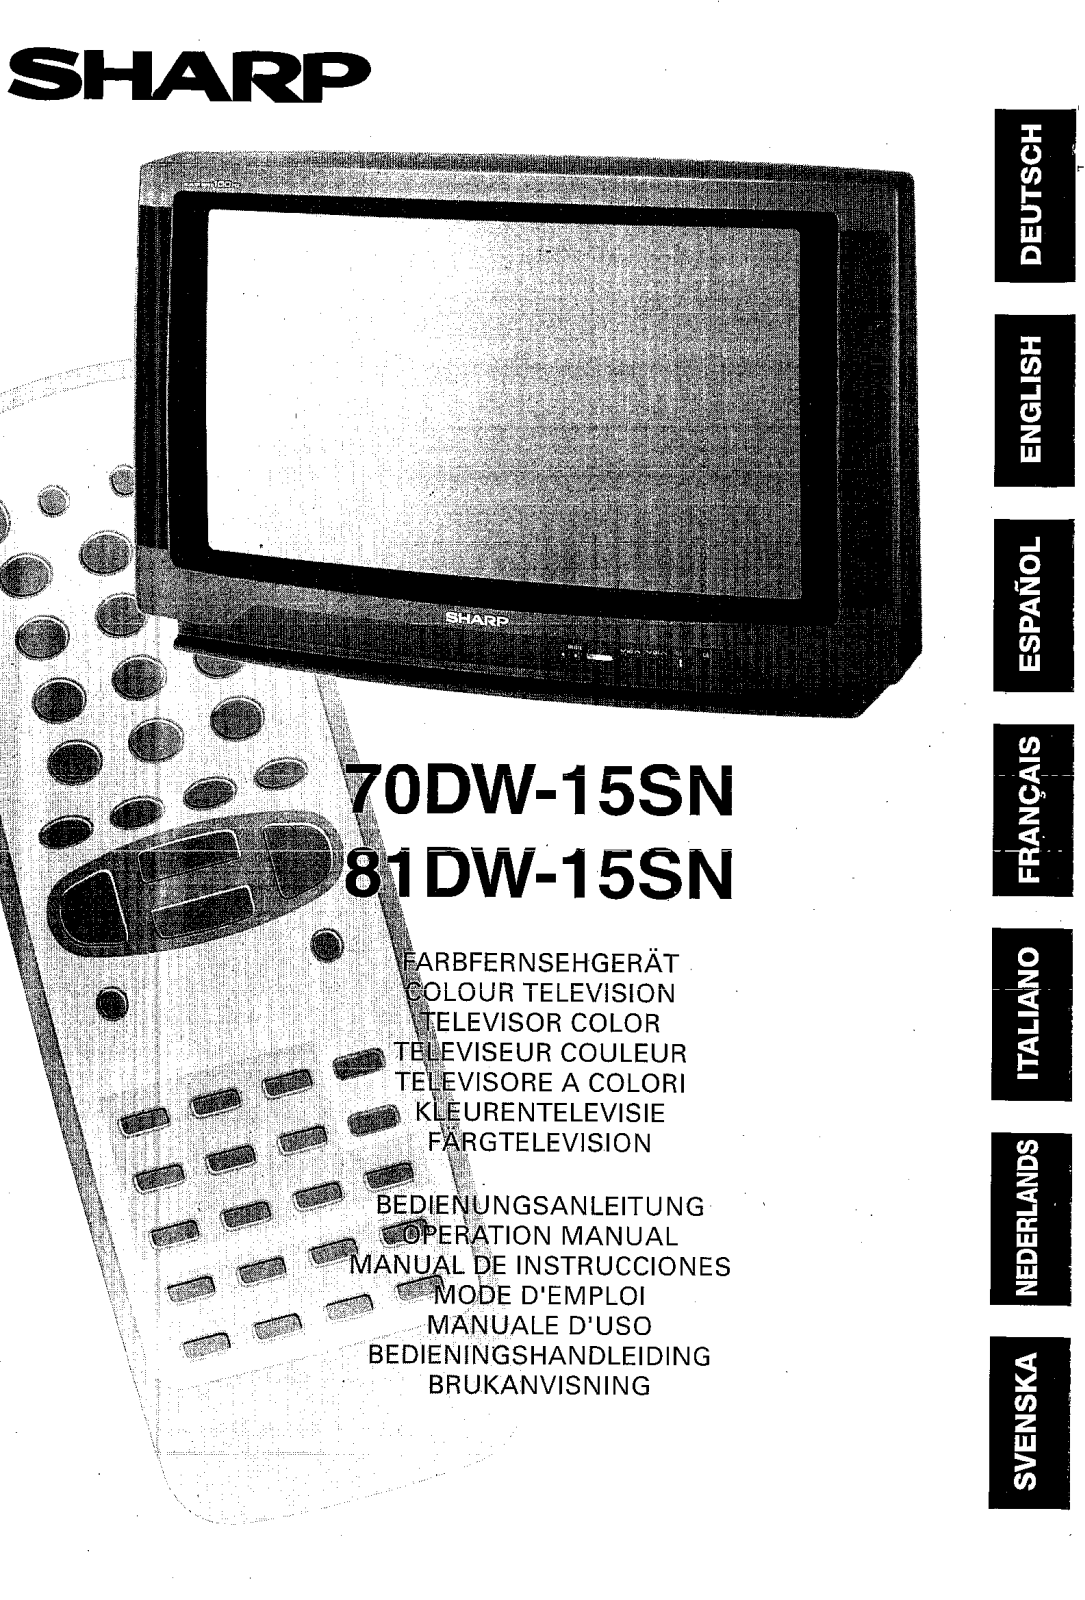 Sharp 81DW-15SN, 70DW-15SN User Manual